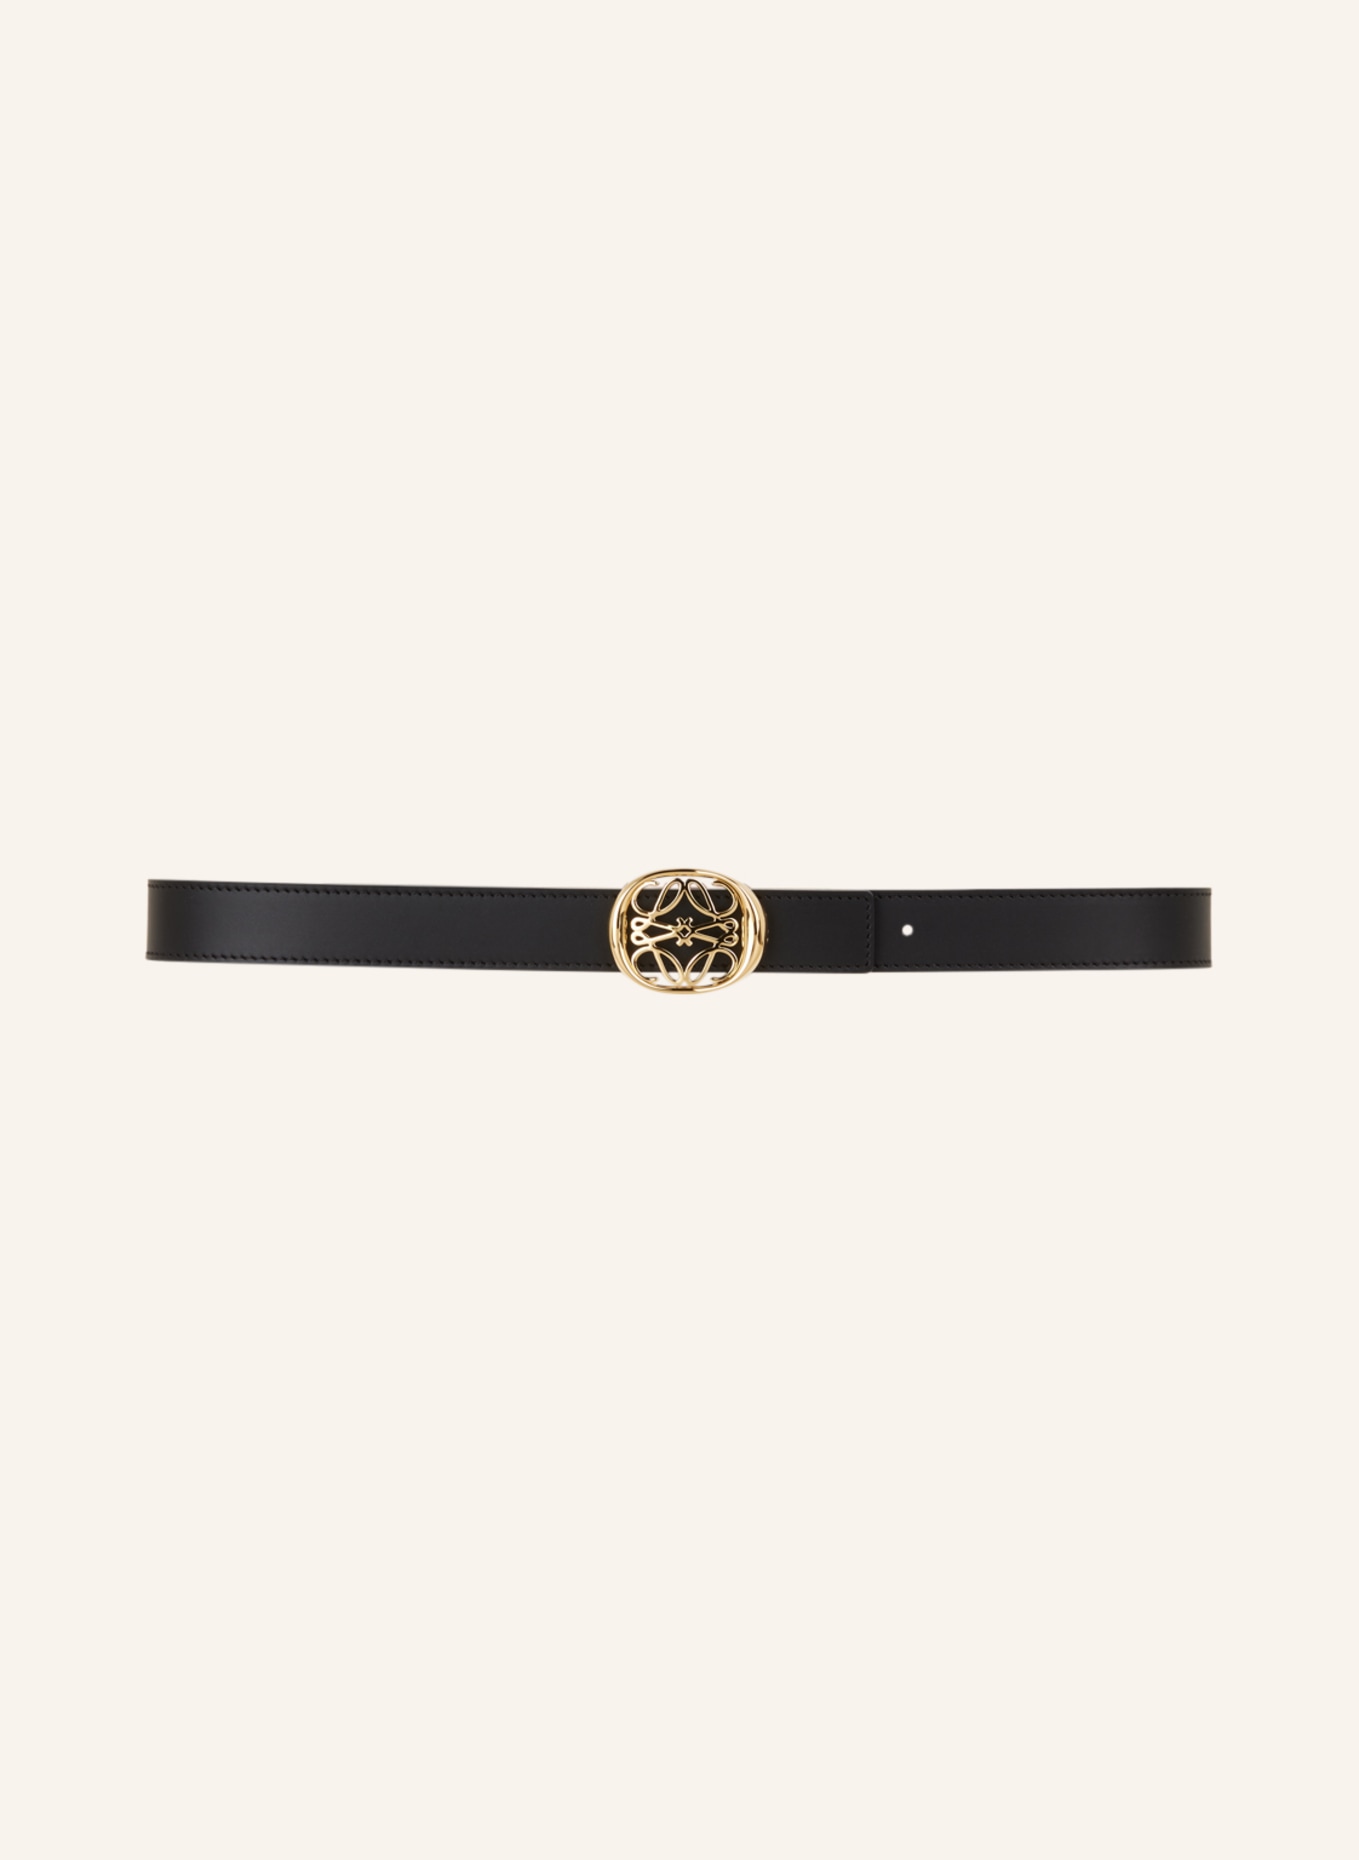 LOEWE Leather belt ANAGRAM reversible, Color: BLACK/ LIGHT BROWN (Image 3)